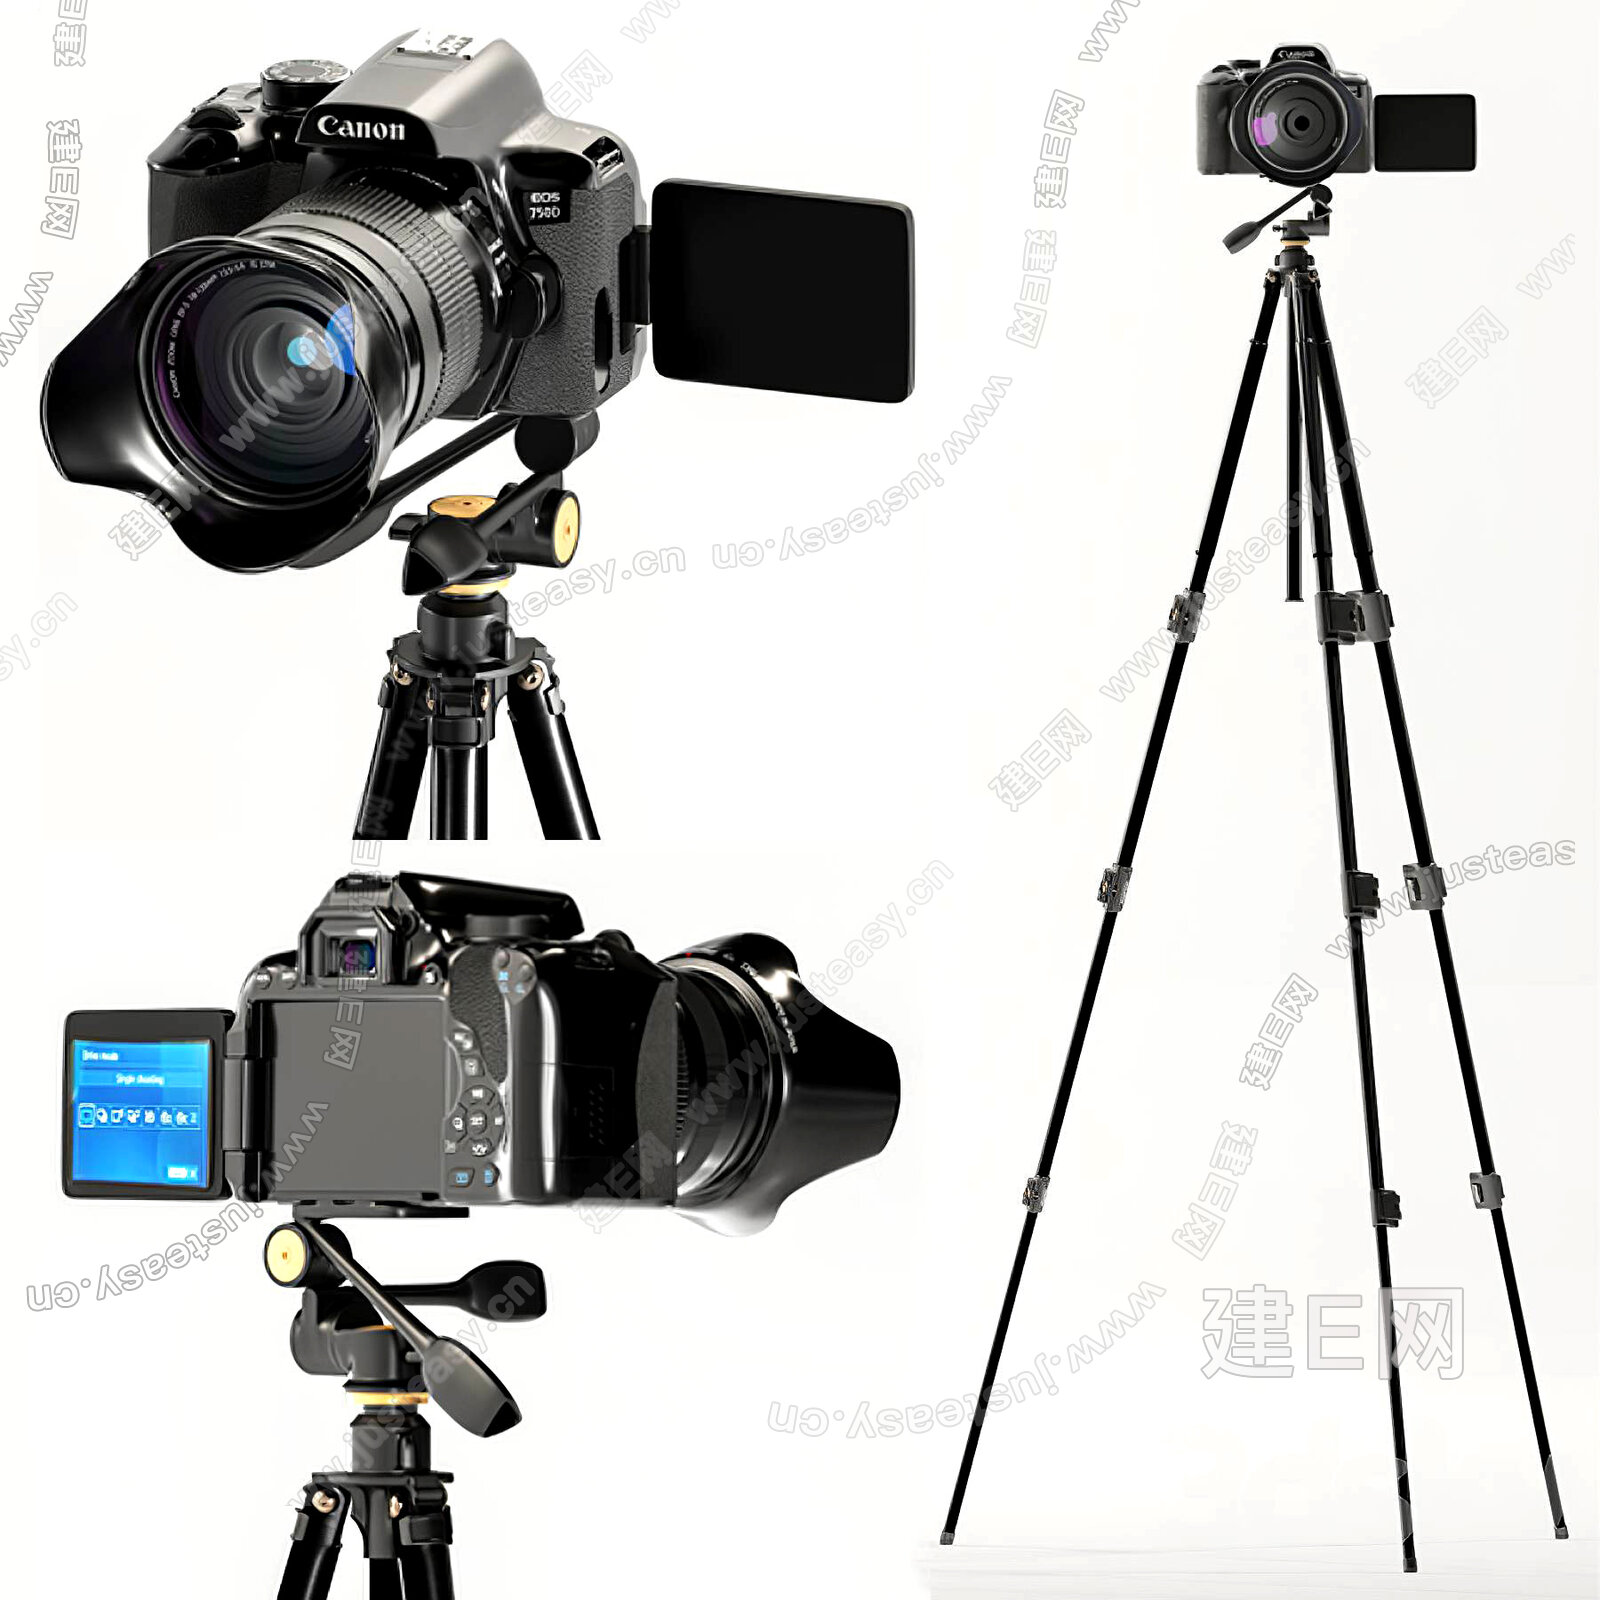 支持4K+50P的HDR视频 佳能发布专业摄像机XF705_器材频道-蜂鸟网